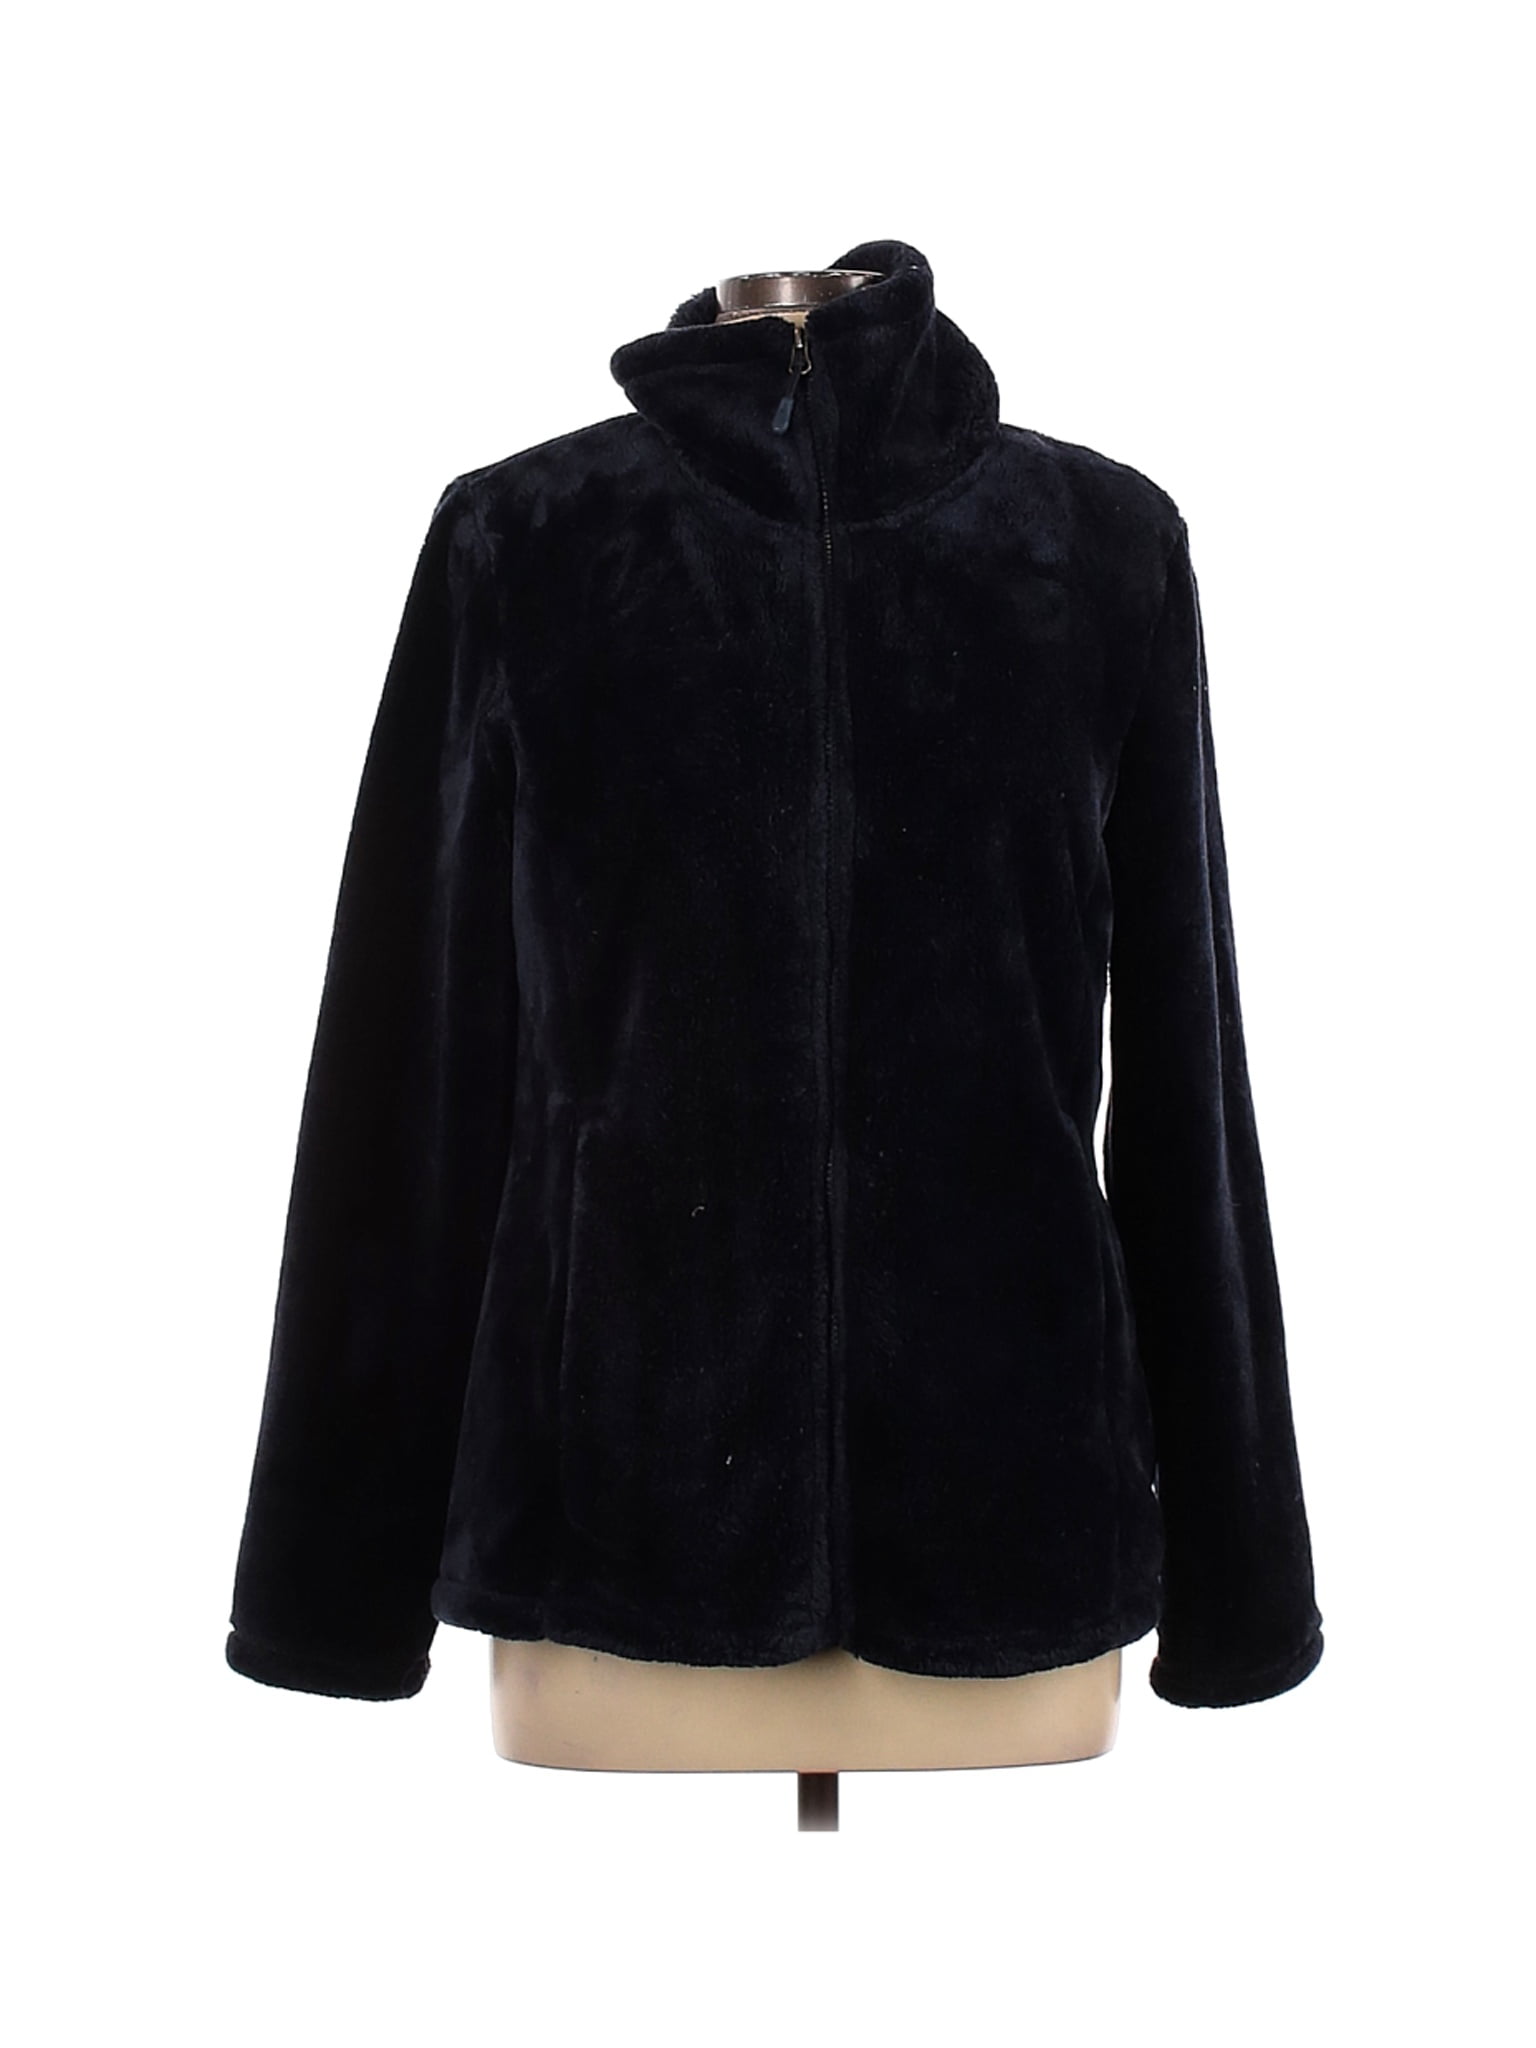 32 Degrees Heat Women's Hooded Plush Faux Fur Fleece Jacket Soft Touch 1412211 